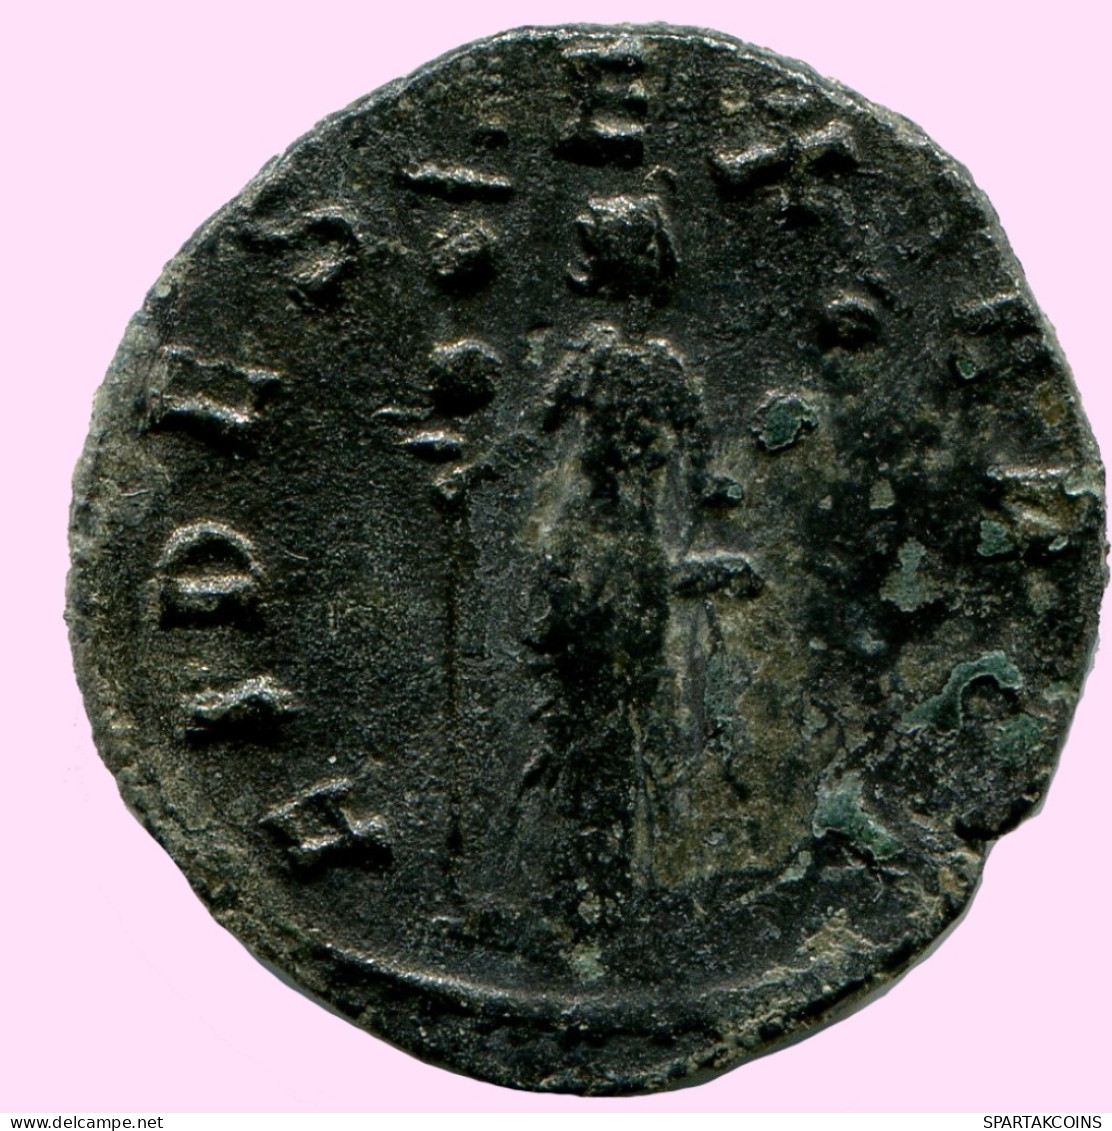 CLAUDIUS II GOTHICUS ANTONINIANUS Romano ANTIGUO Moneda #ANC11973.25.E.A - Der Soldatenkaiser (die Militärkrise) (235 / 284)